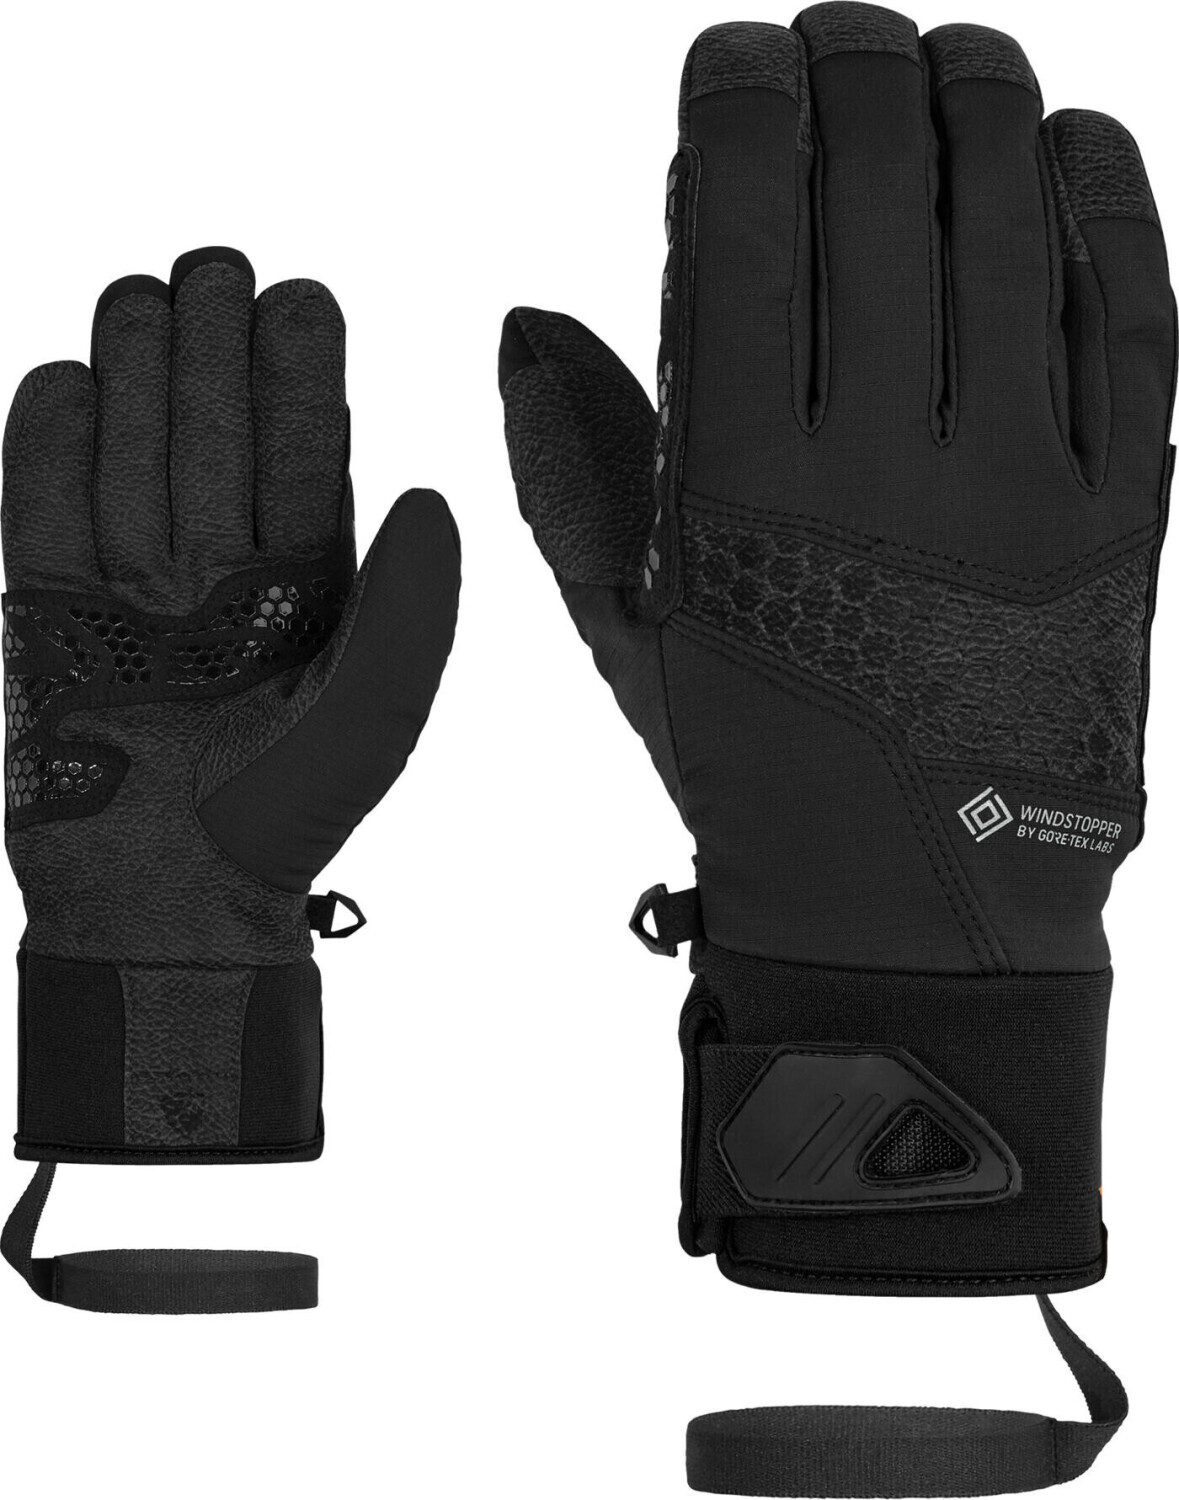 Ziener Gorner WS Glove | 52,28 ab Preisvergleich € bei Mountaineering